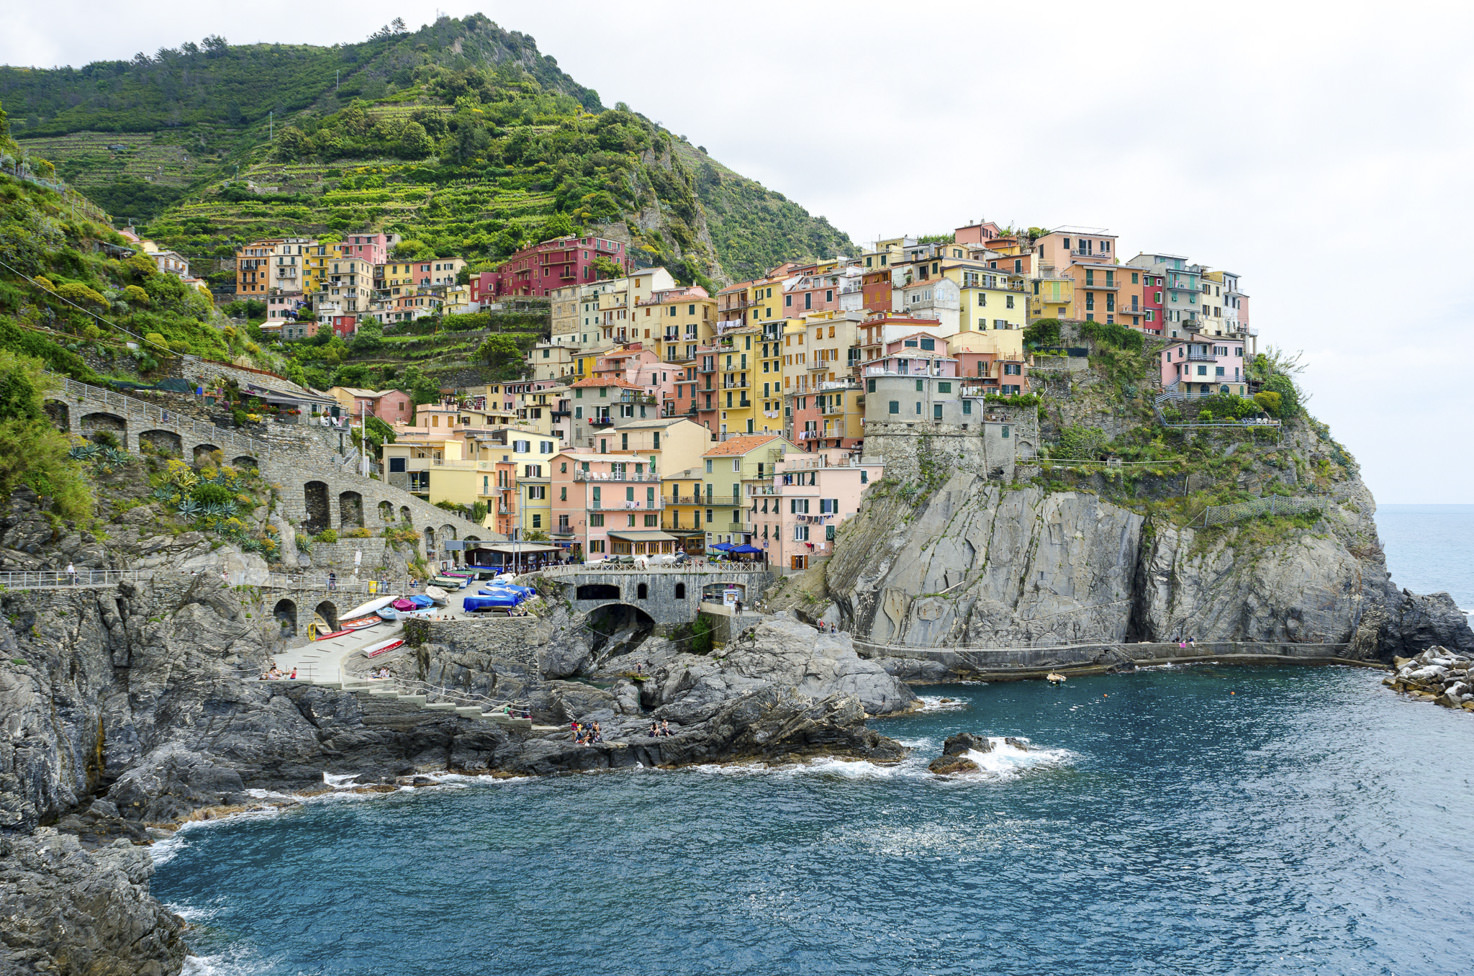 Cinque Terre on the Italian Riviera